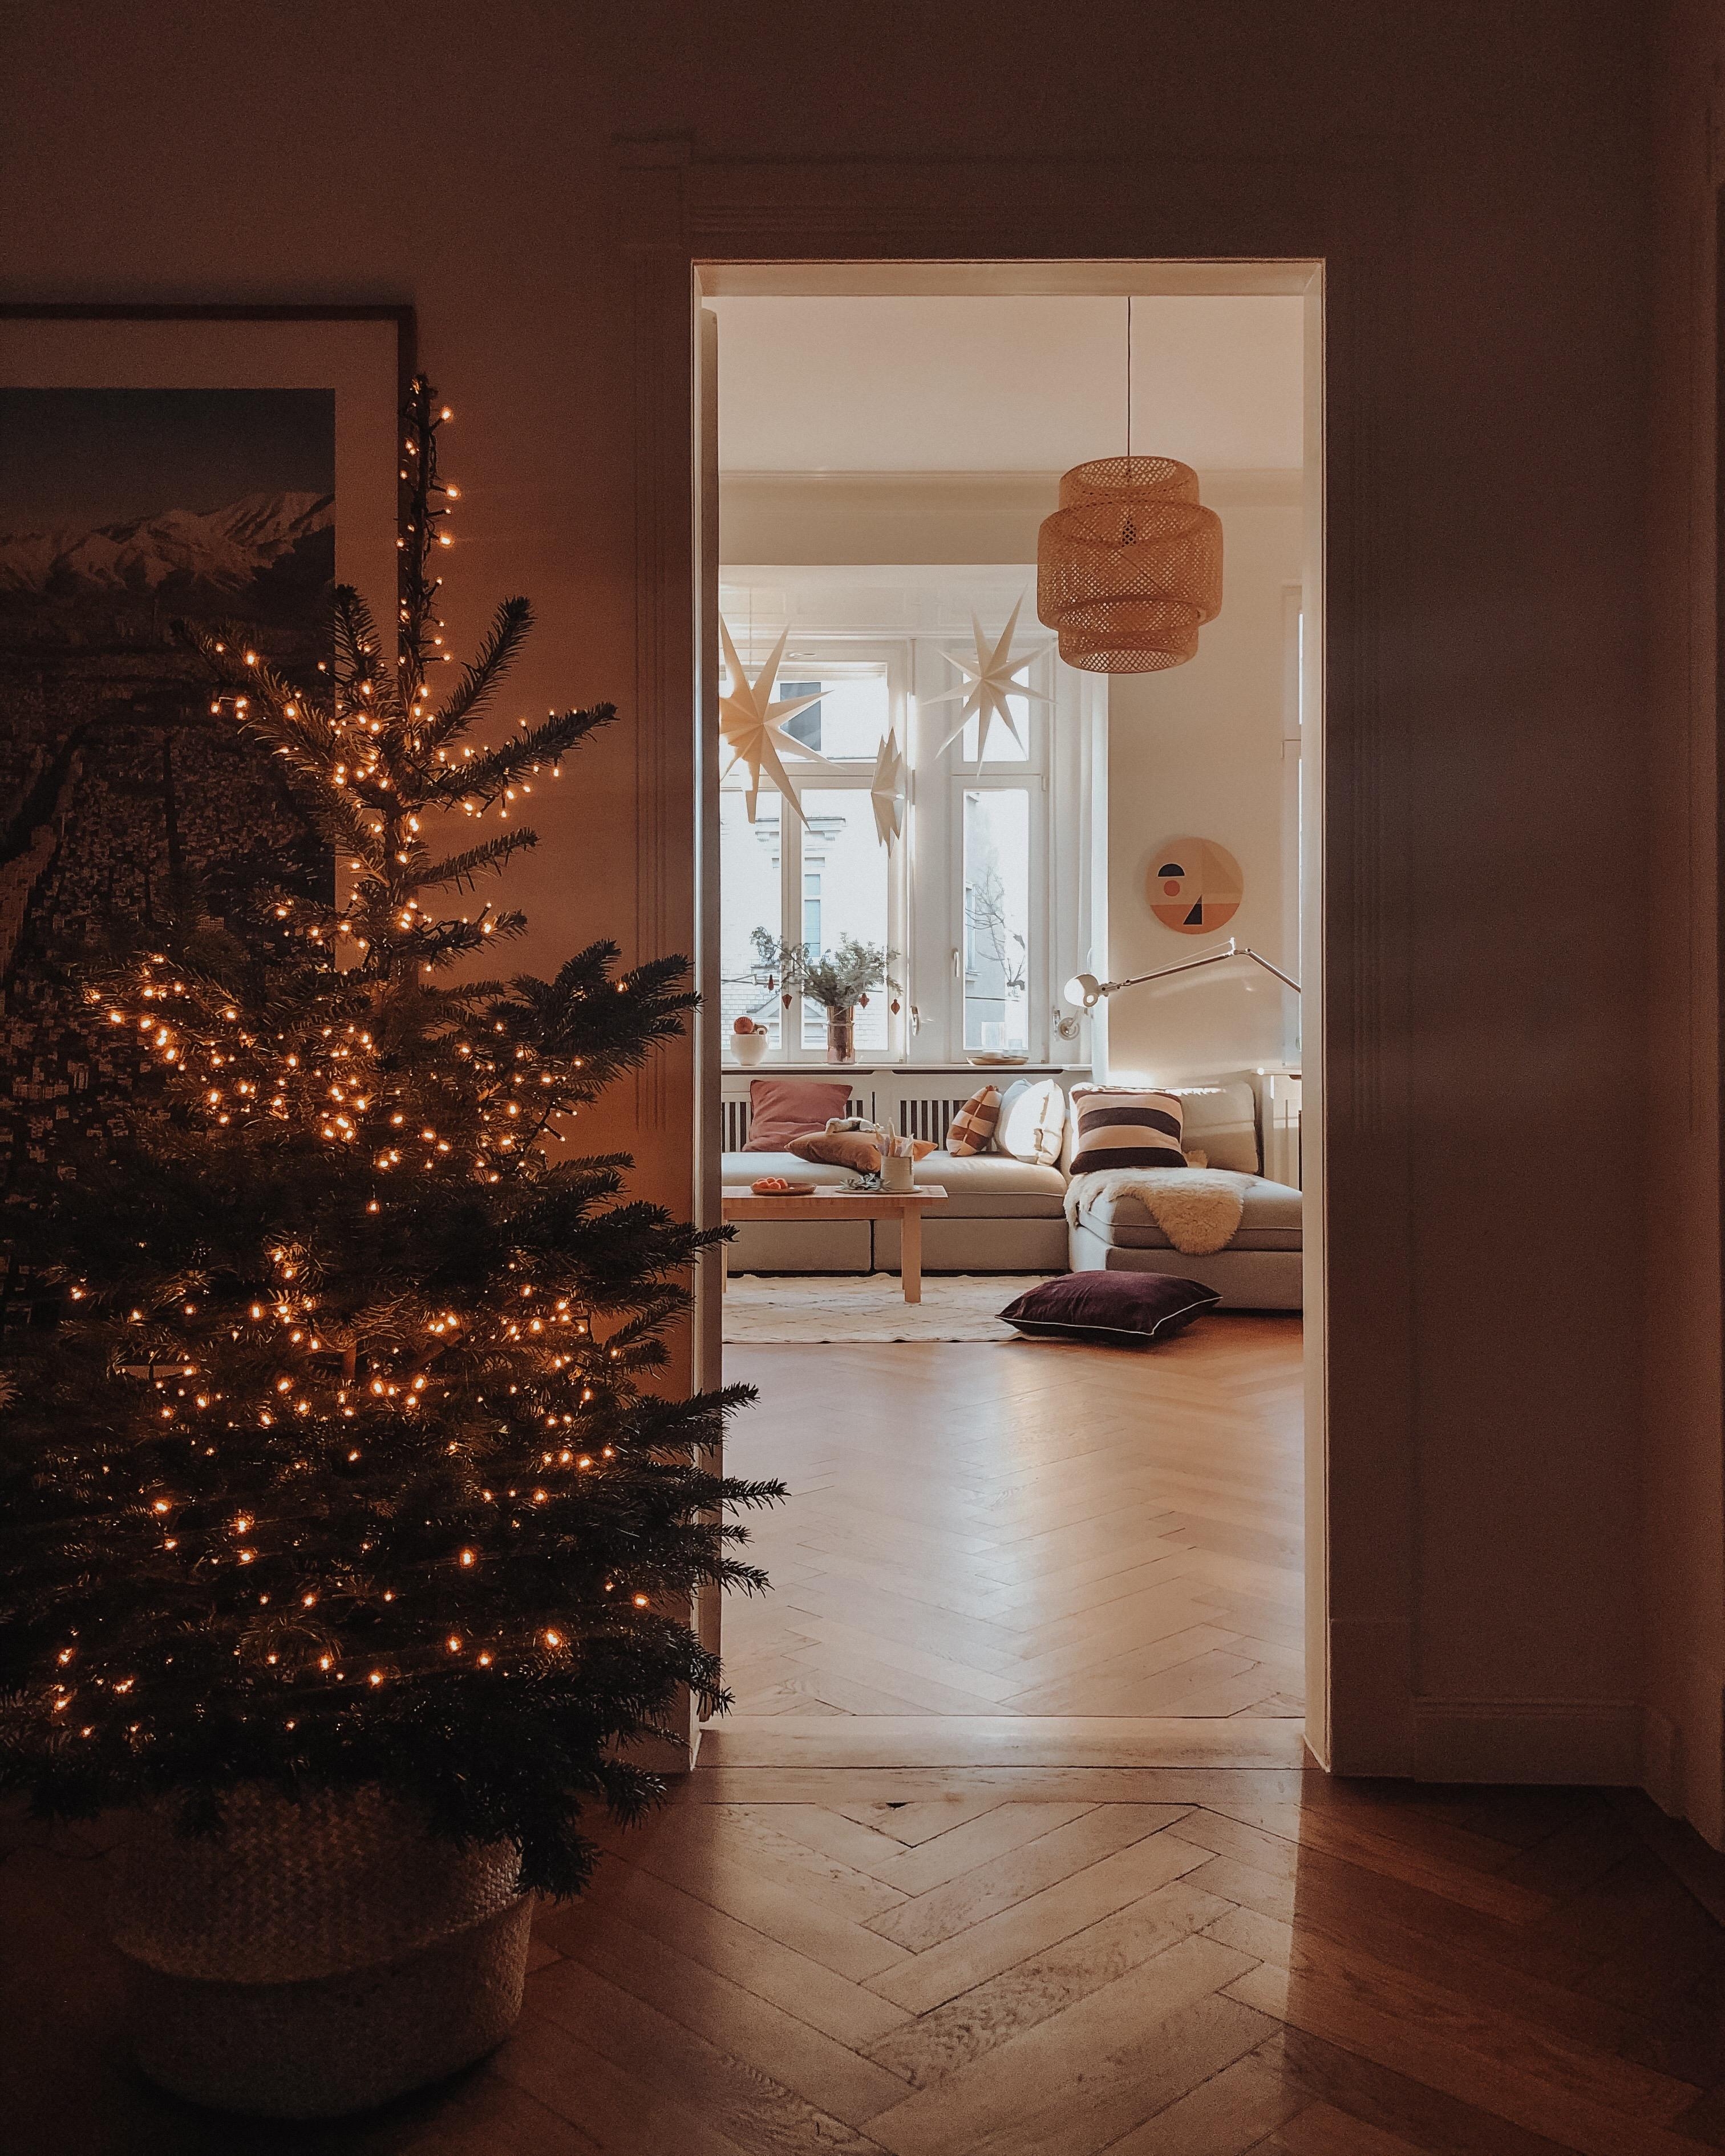 Wir freuen uns auf morgen! #weihnachten #altbauliebe #weihnachtsbaum